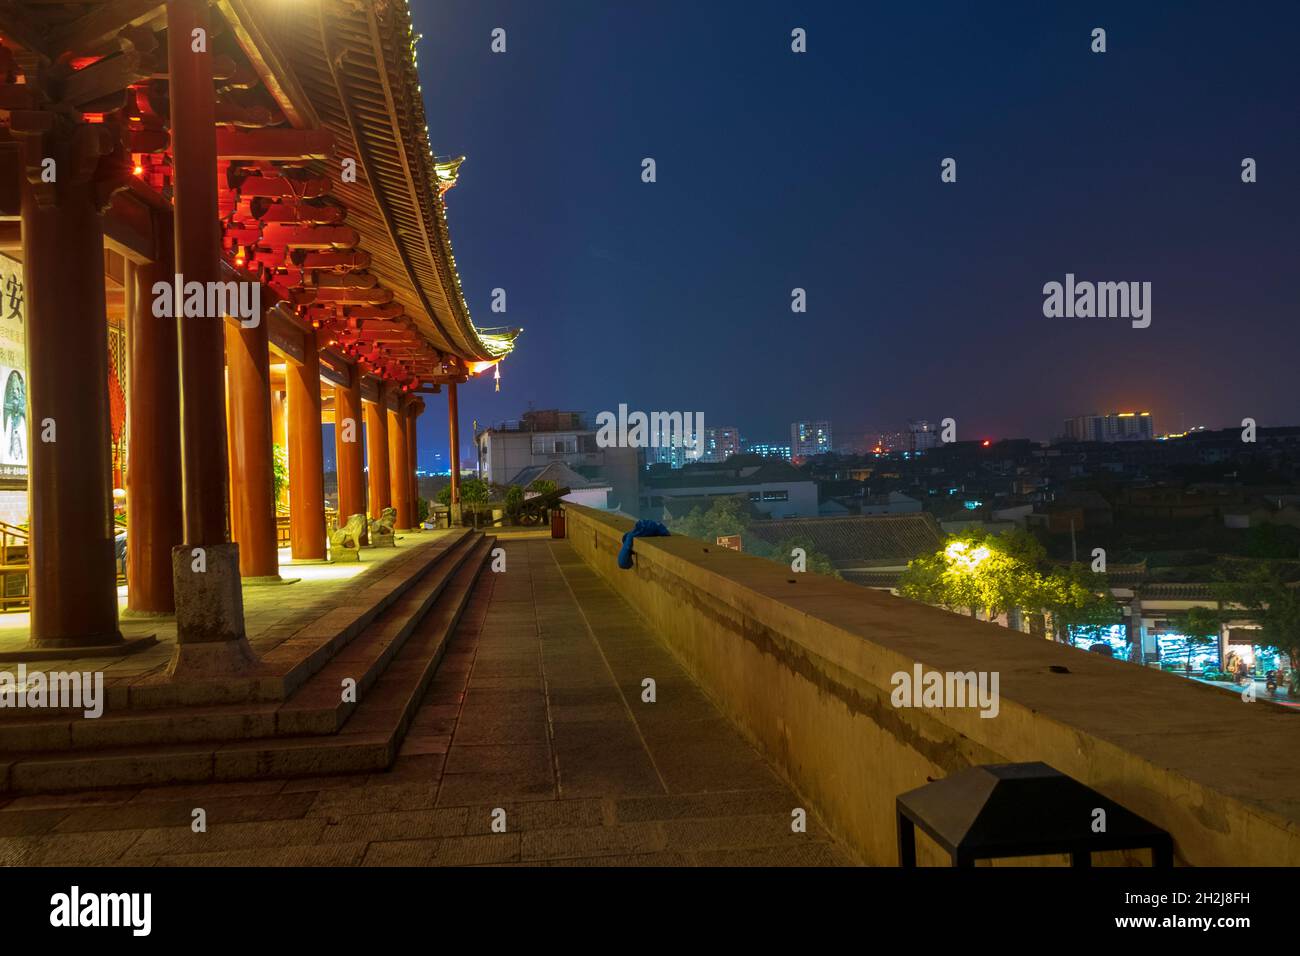 Chao Yang Lou, the old city gate of Jianshu, Yunnan, China at night Stock Photo